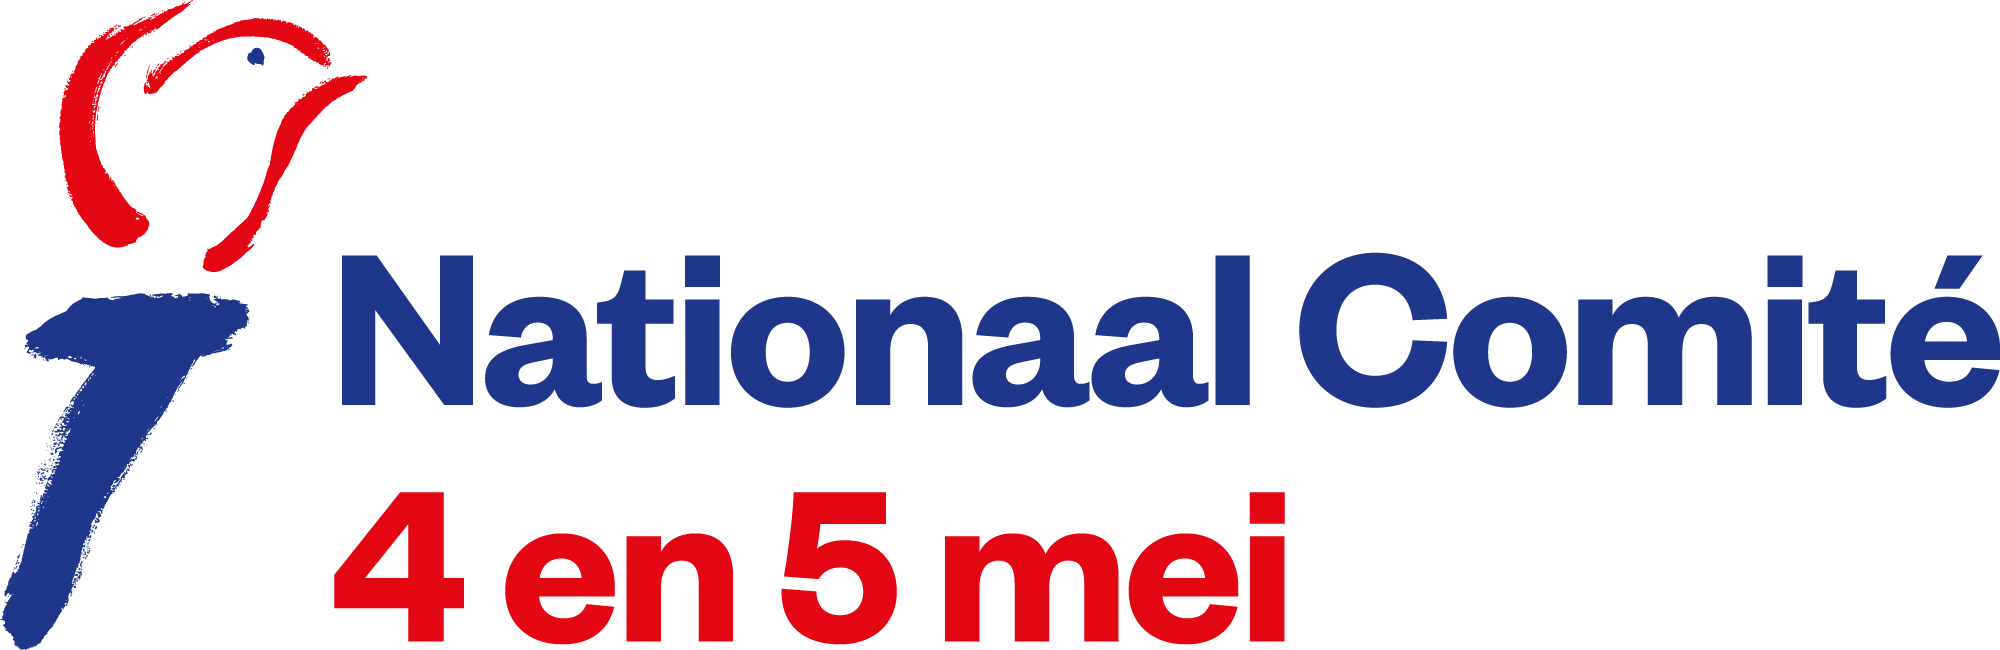 Le logo du « Nationaal Comité 4 en 5 mei » (Comité National 4 et 5 mai).